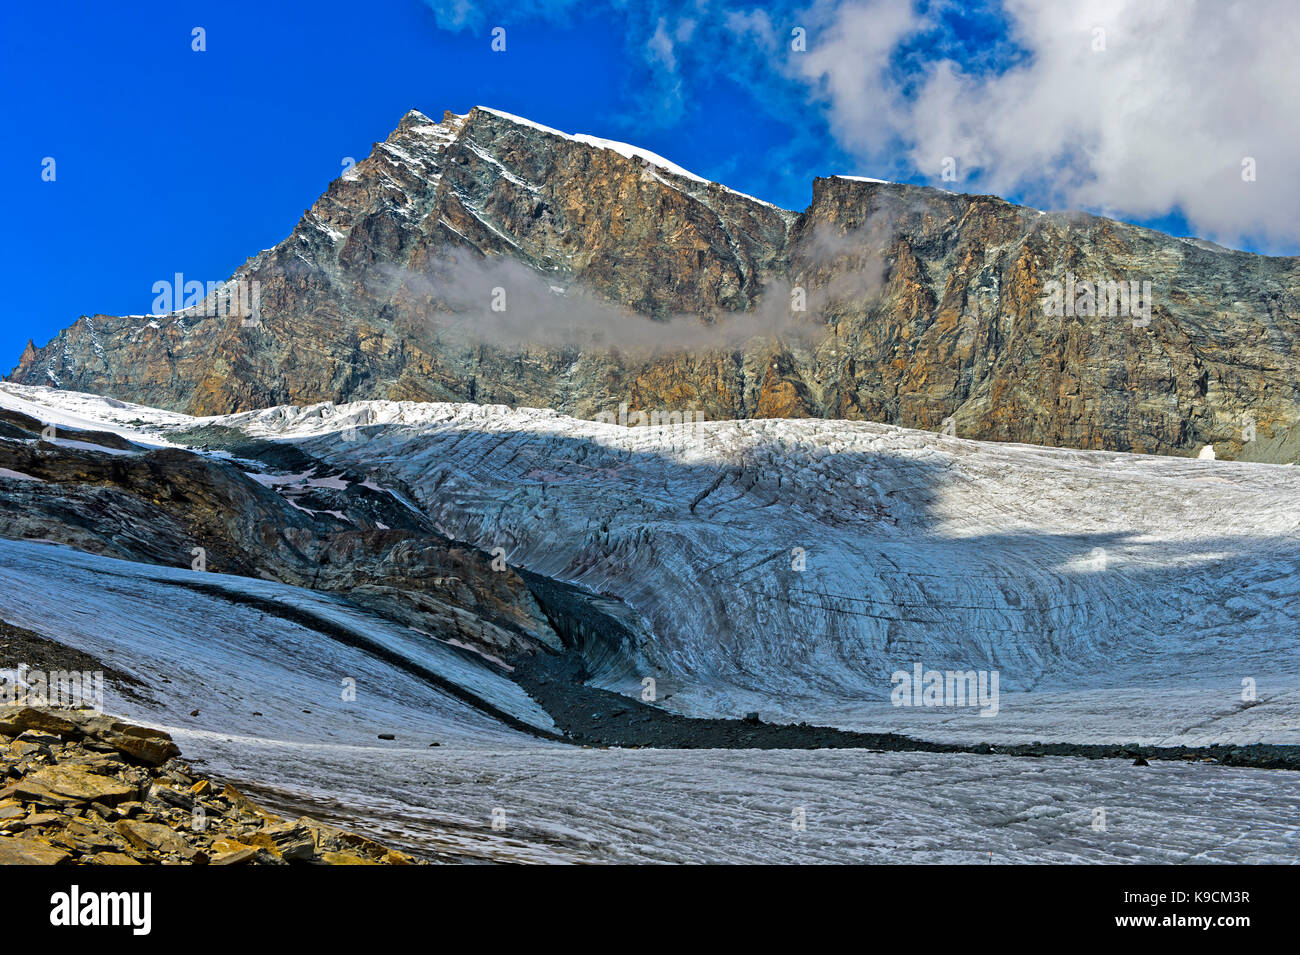 Allalinhorn pic s'élève au-dessus de l'allalingletscher glacier, saas-fee, Valais, Suisse Banque D'Images